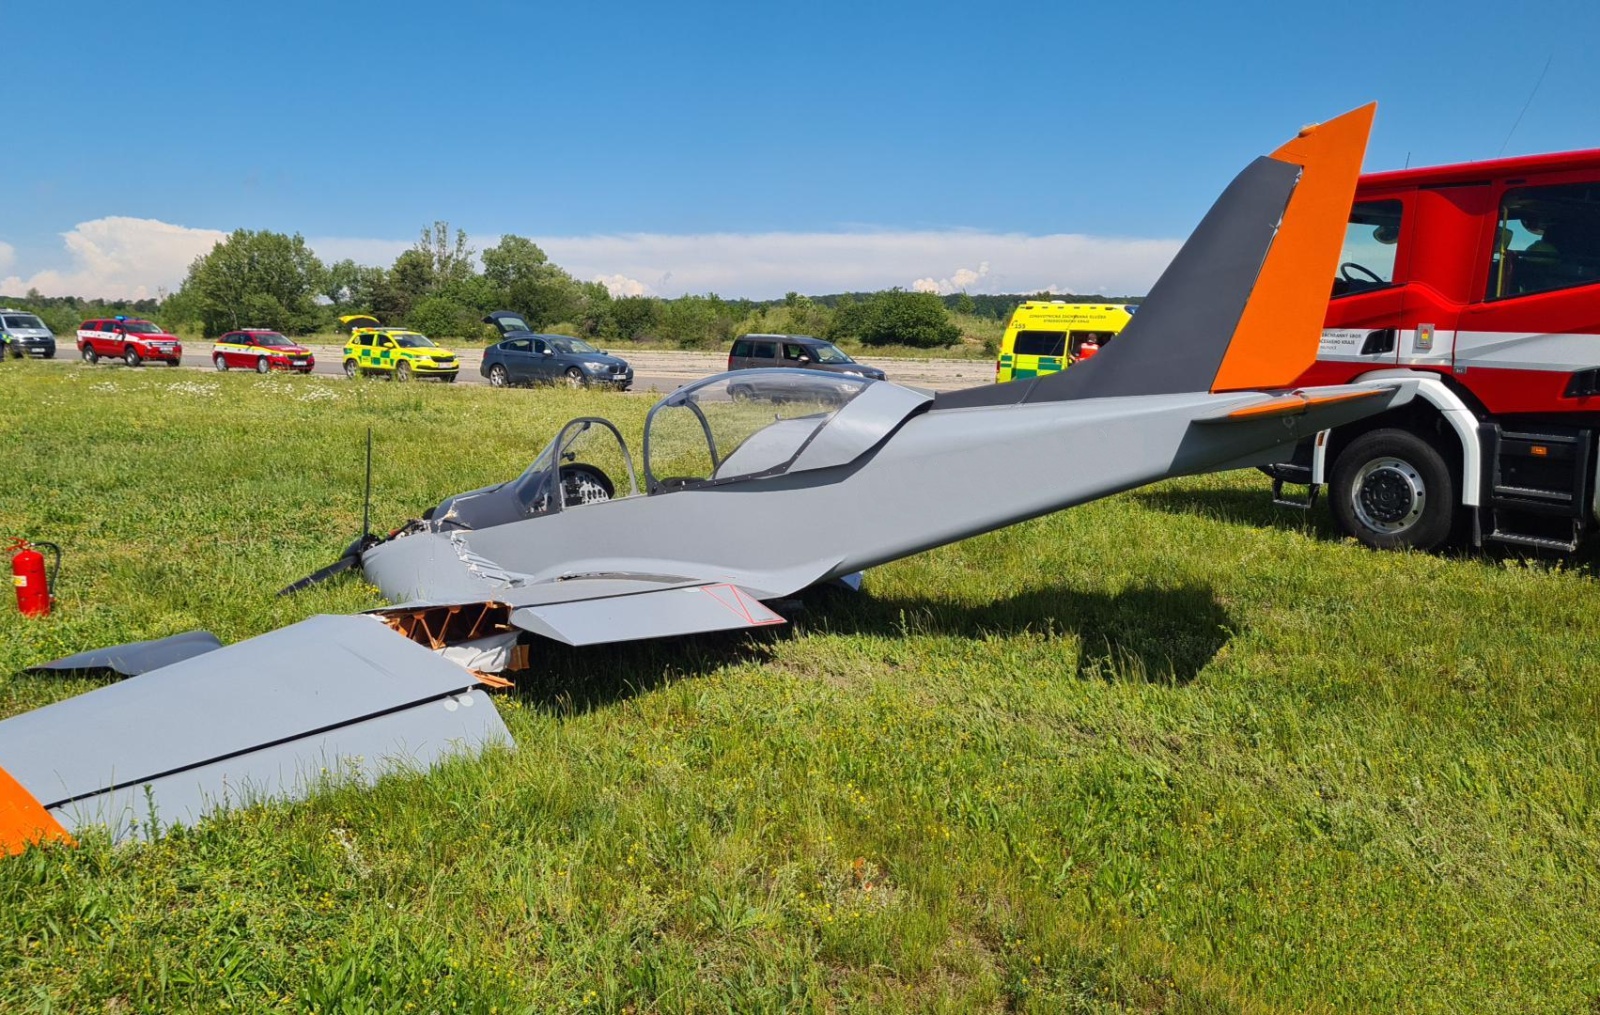 200524-Havárie malého jednomotorového letadla na letišti Boží Dar v Milovicích na Nymbursku.jpg